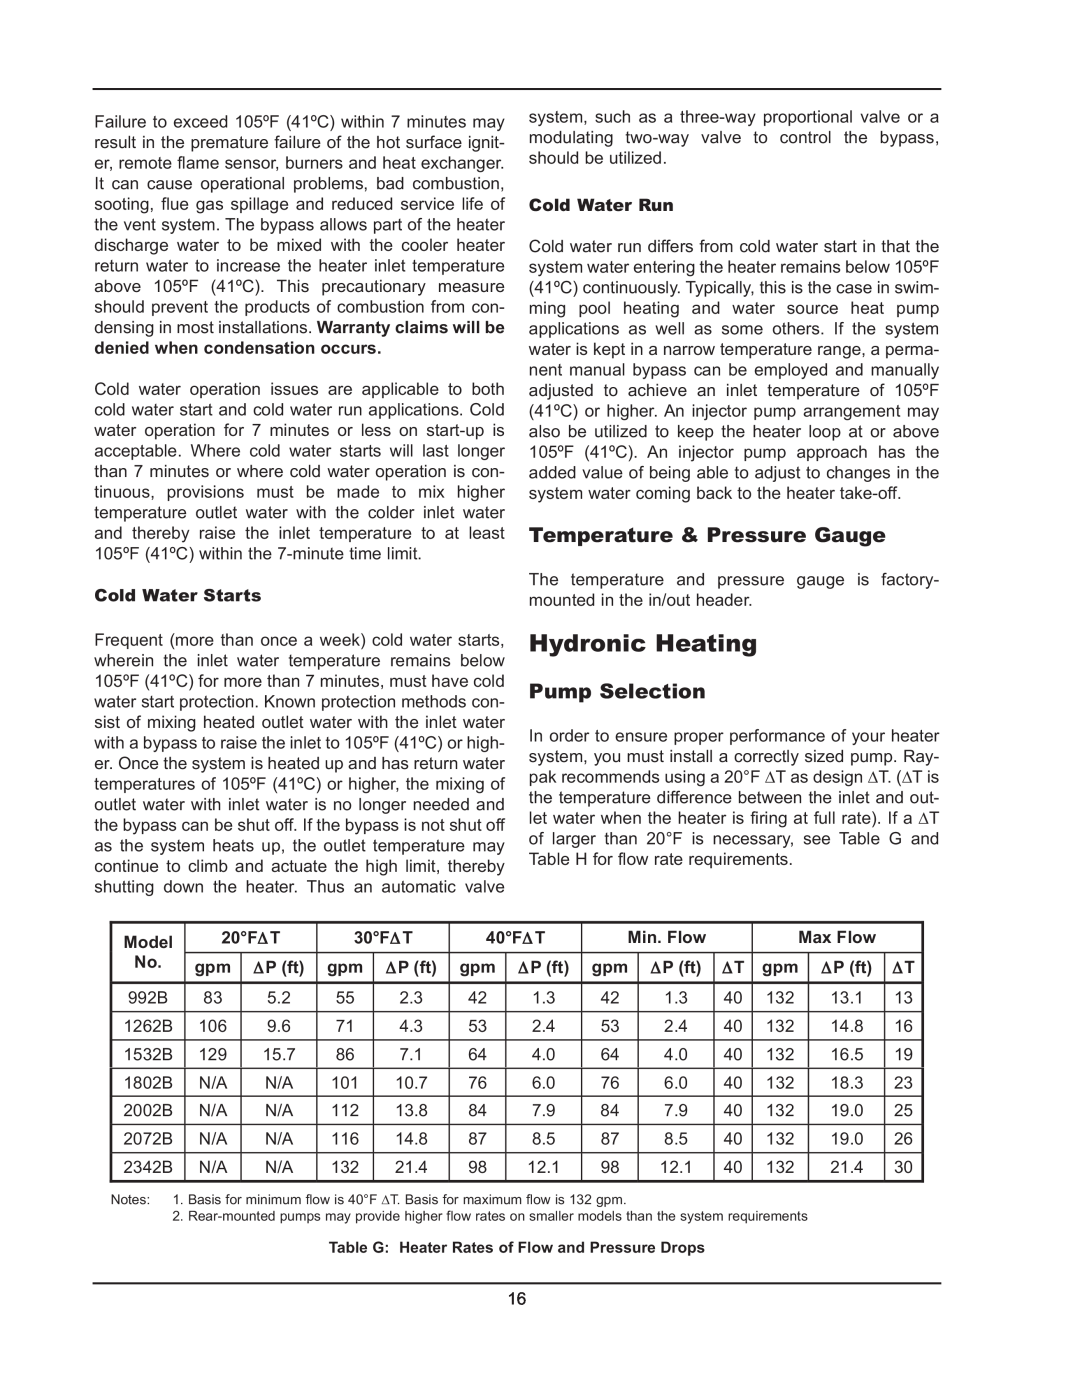 Raypak 992B manual Hydronic Heating, Temperature & Pressure Gauge, Pump Selection 